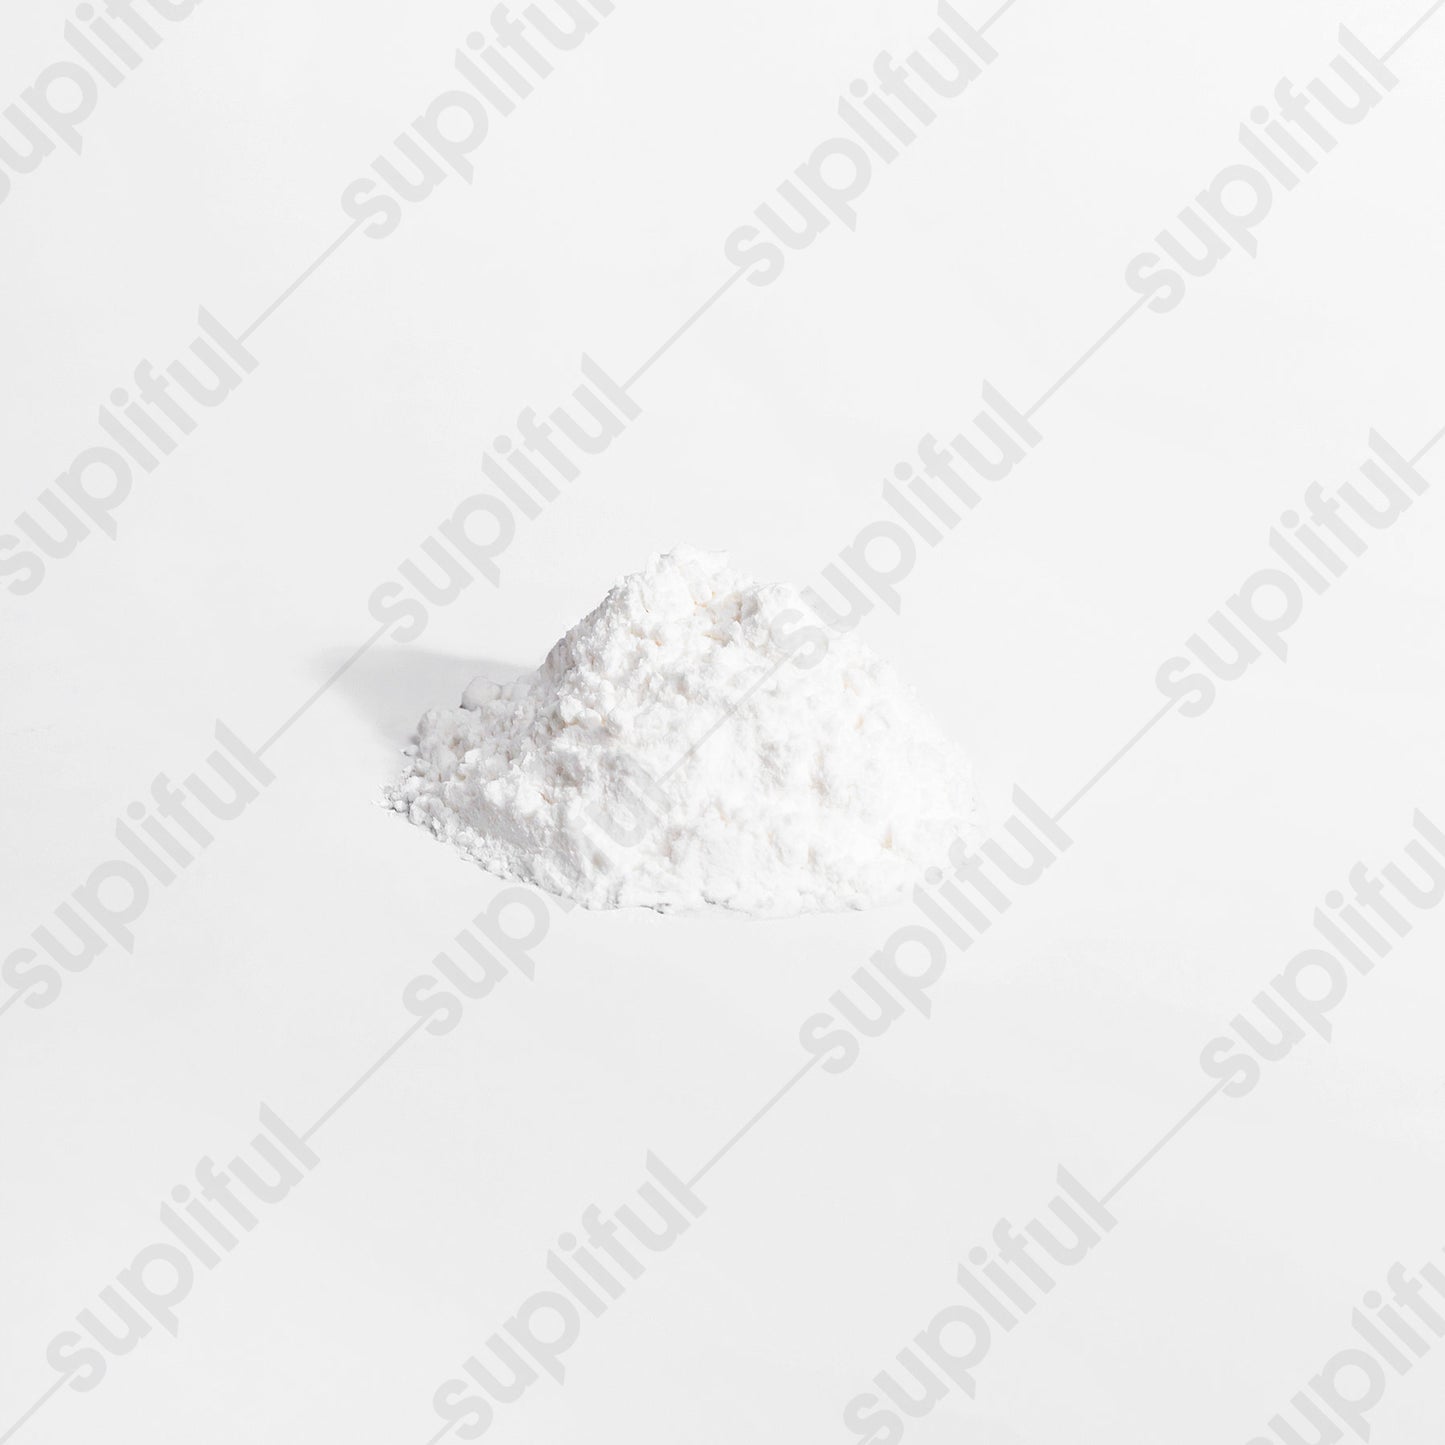 Rejuvamend: L-Glutamine Powder